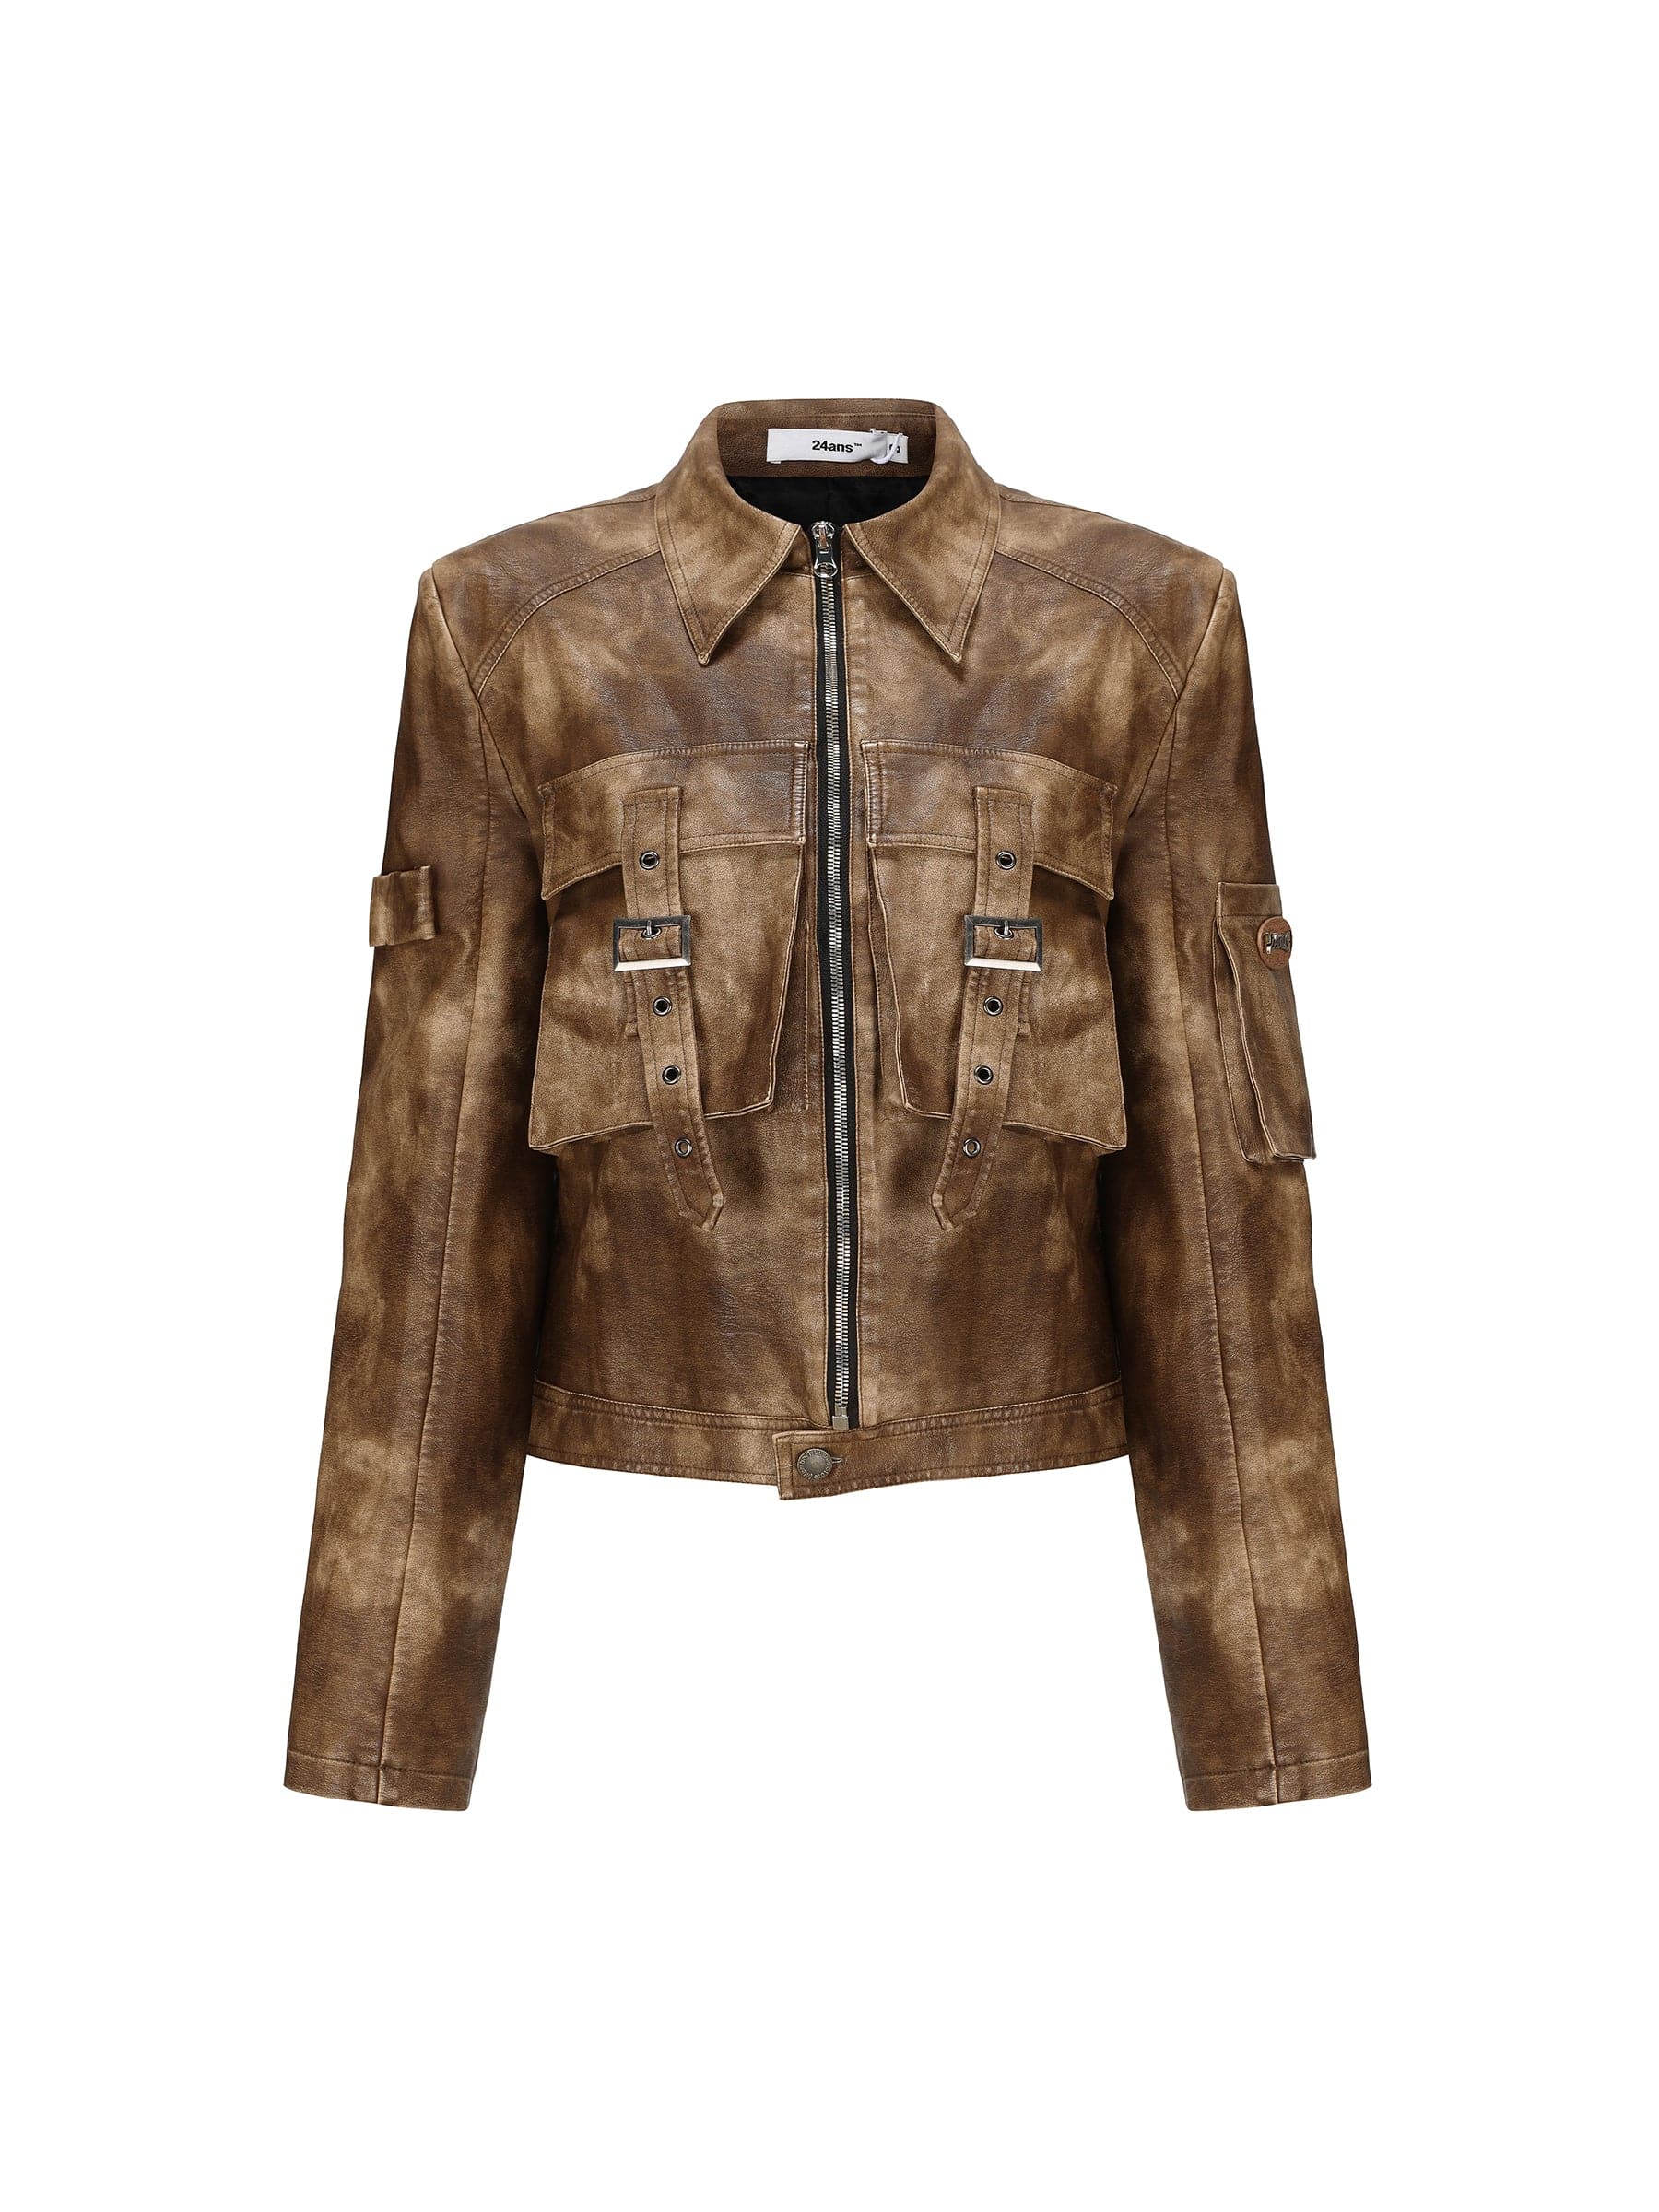 Fleece-Lined & Non-Fleece Leather Jacket - chiclara